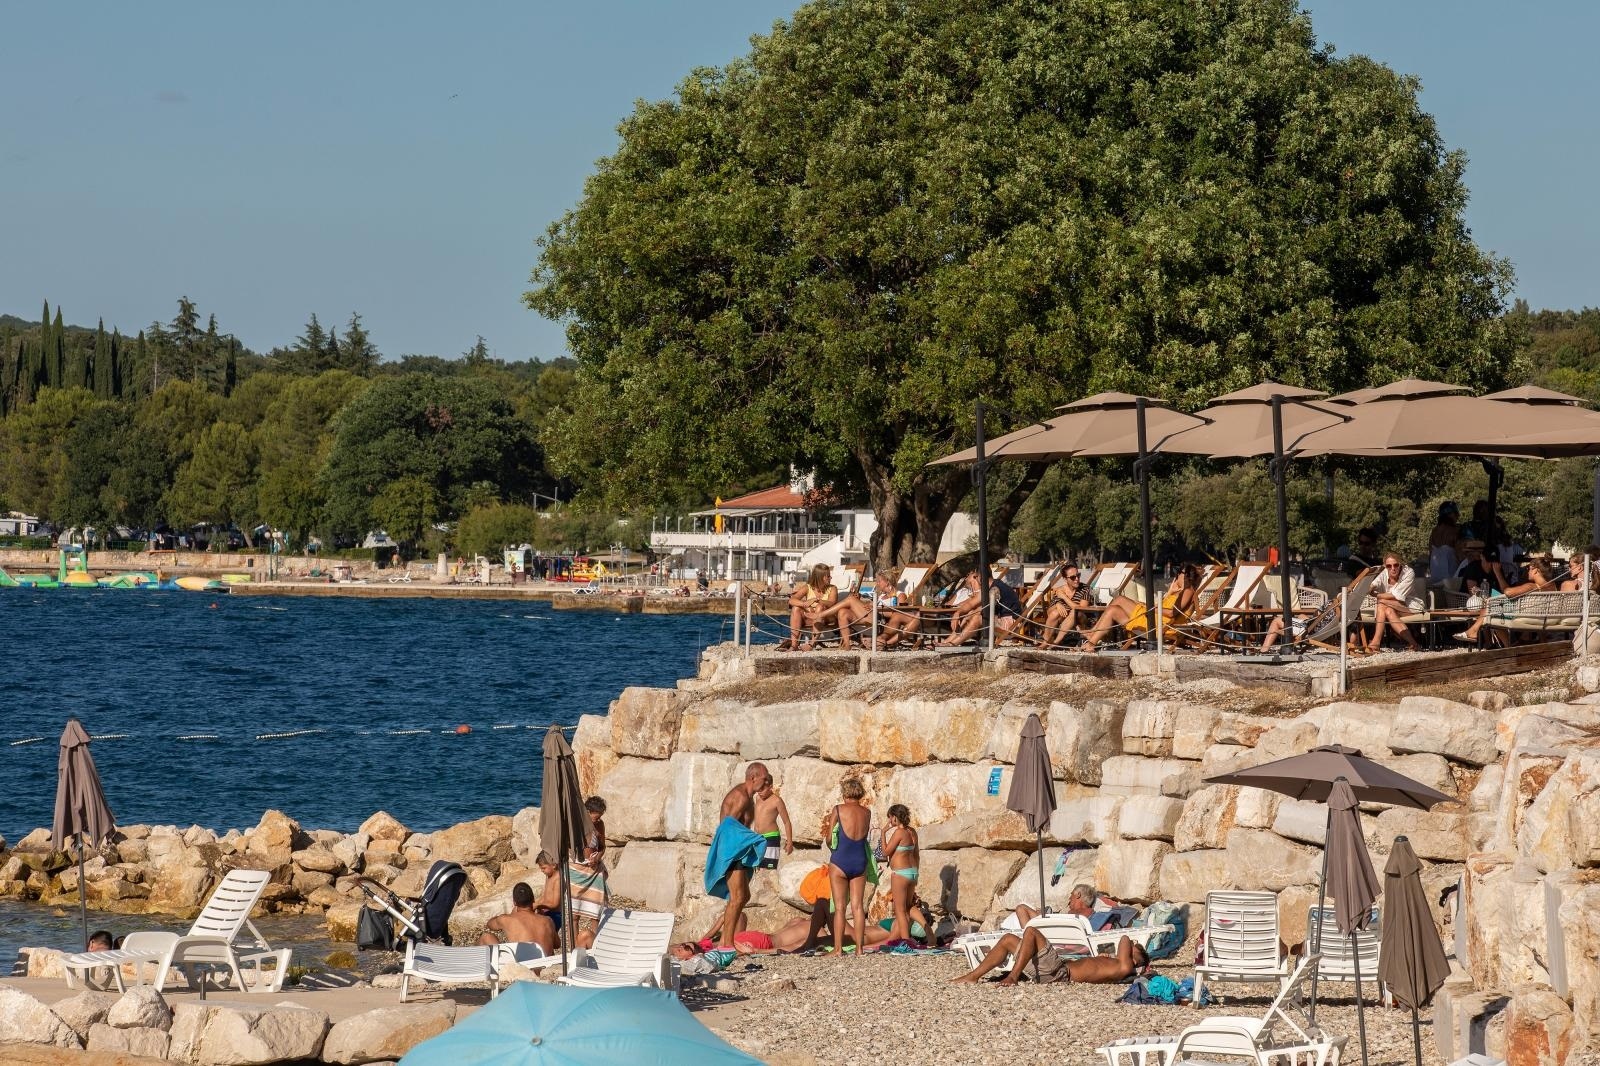 07.07.2020., Vrsar - Ribarsko te turisticko mjesto na zapadnoj obali Istre. Plaze oko Vrsara
Photo: Srecko Niketic/PIXSELL